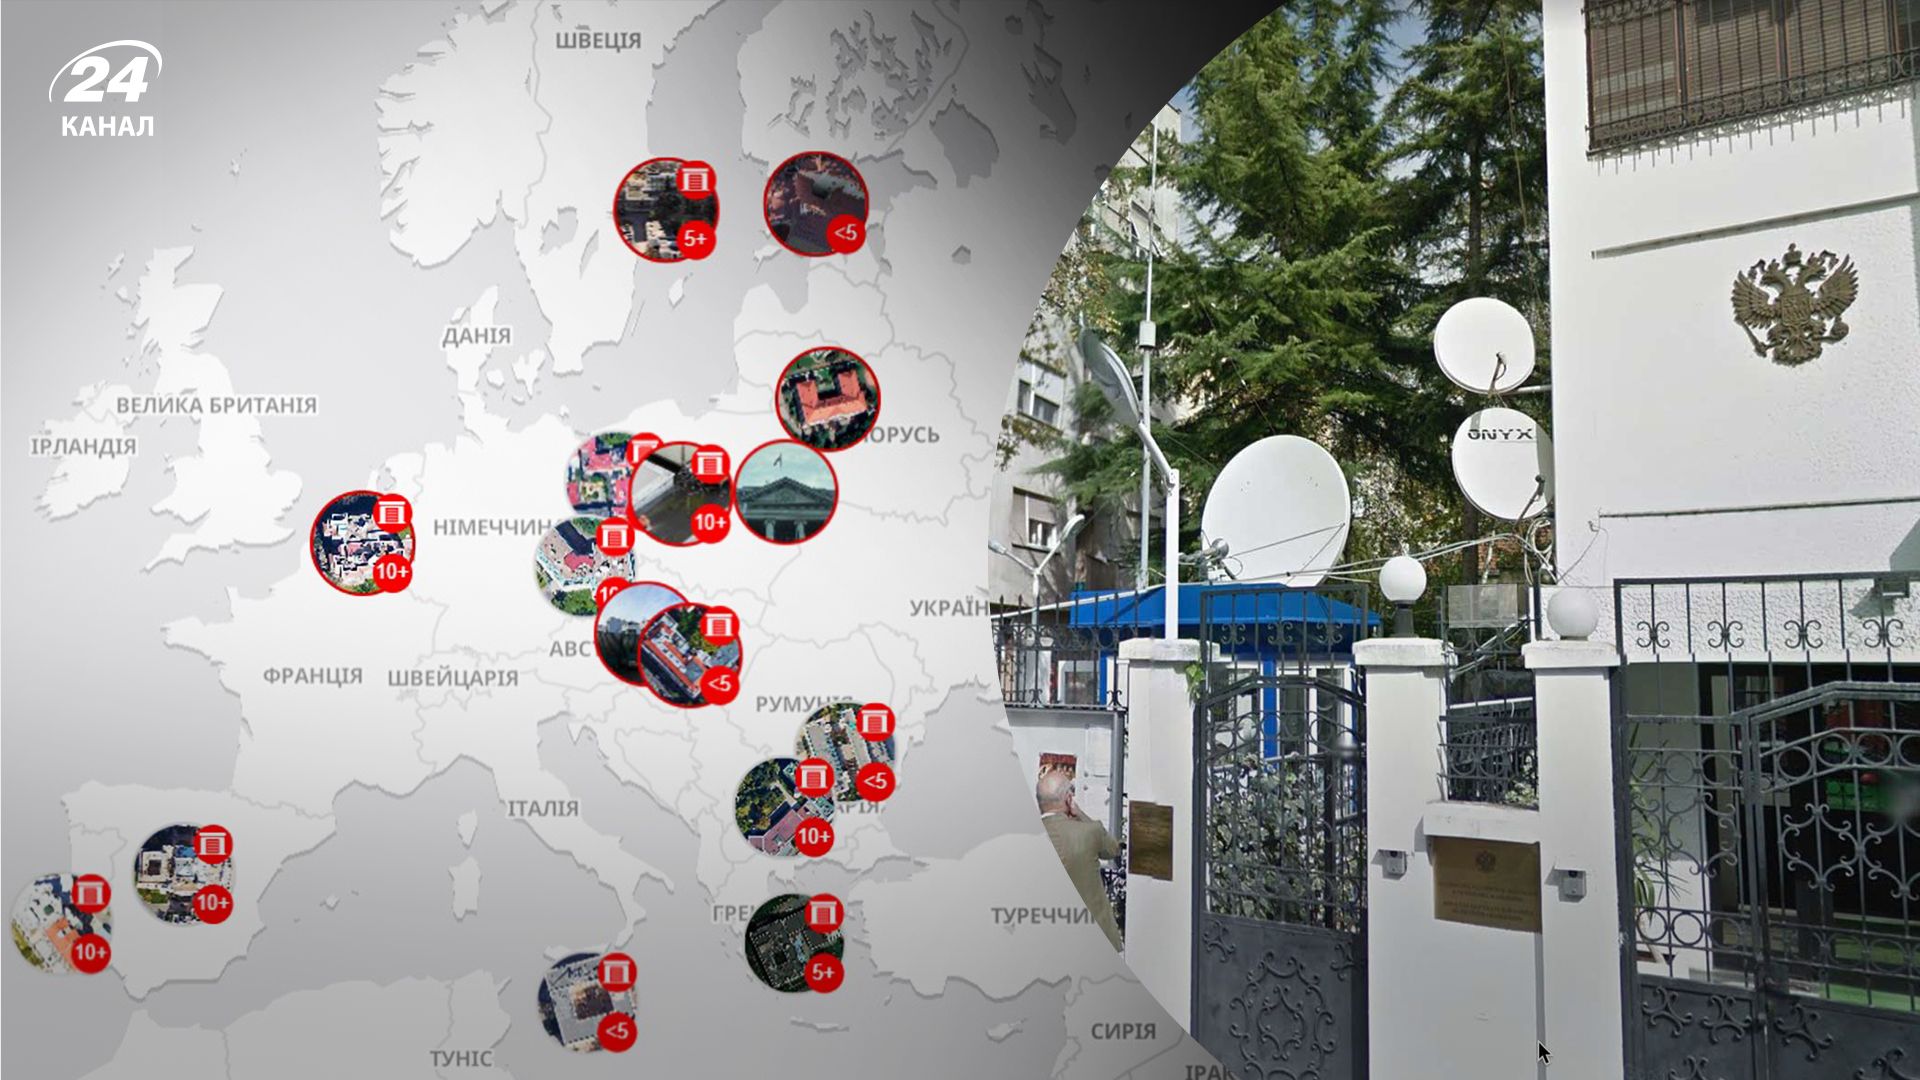 Спецслужбы России установили в странах Европы систему слежения на посольствах, – СМИ - 24 Канал